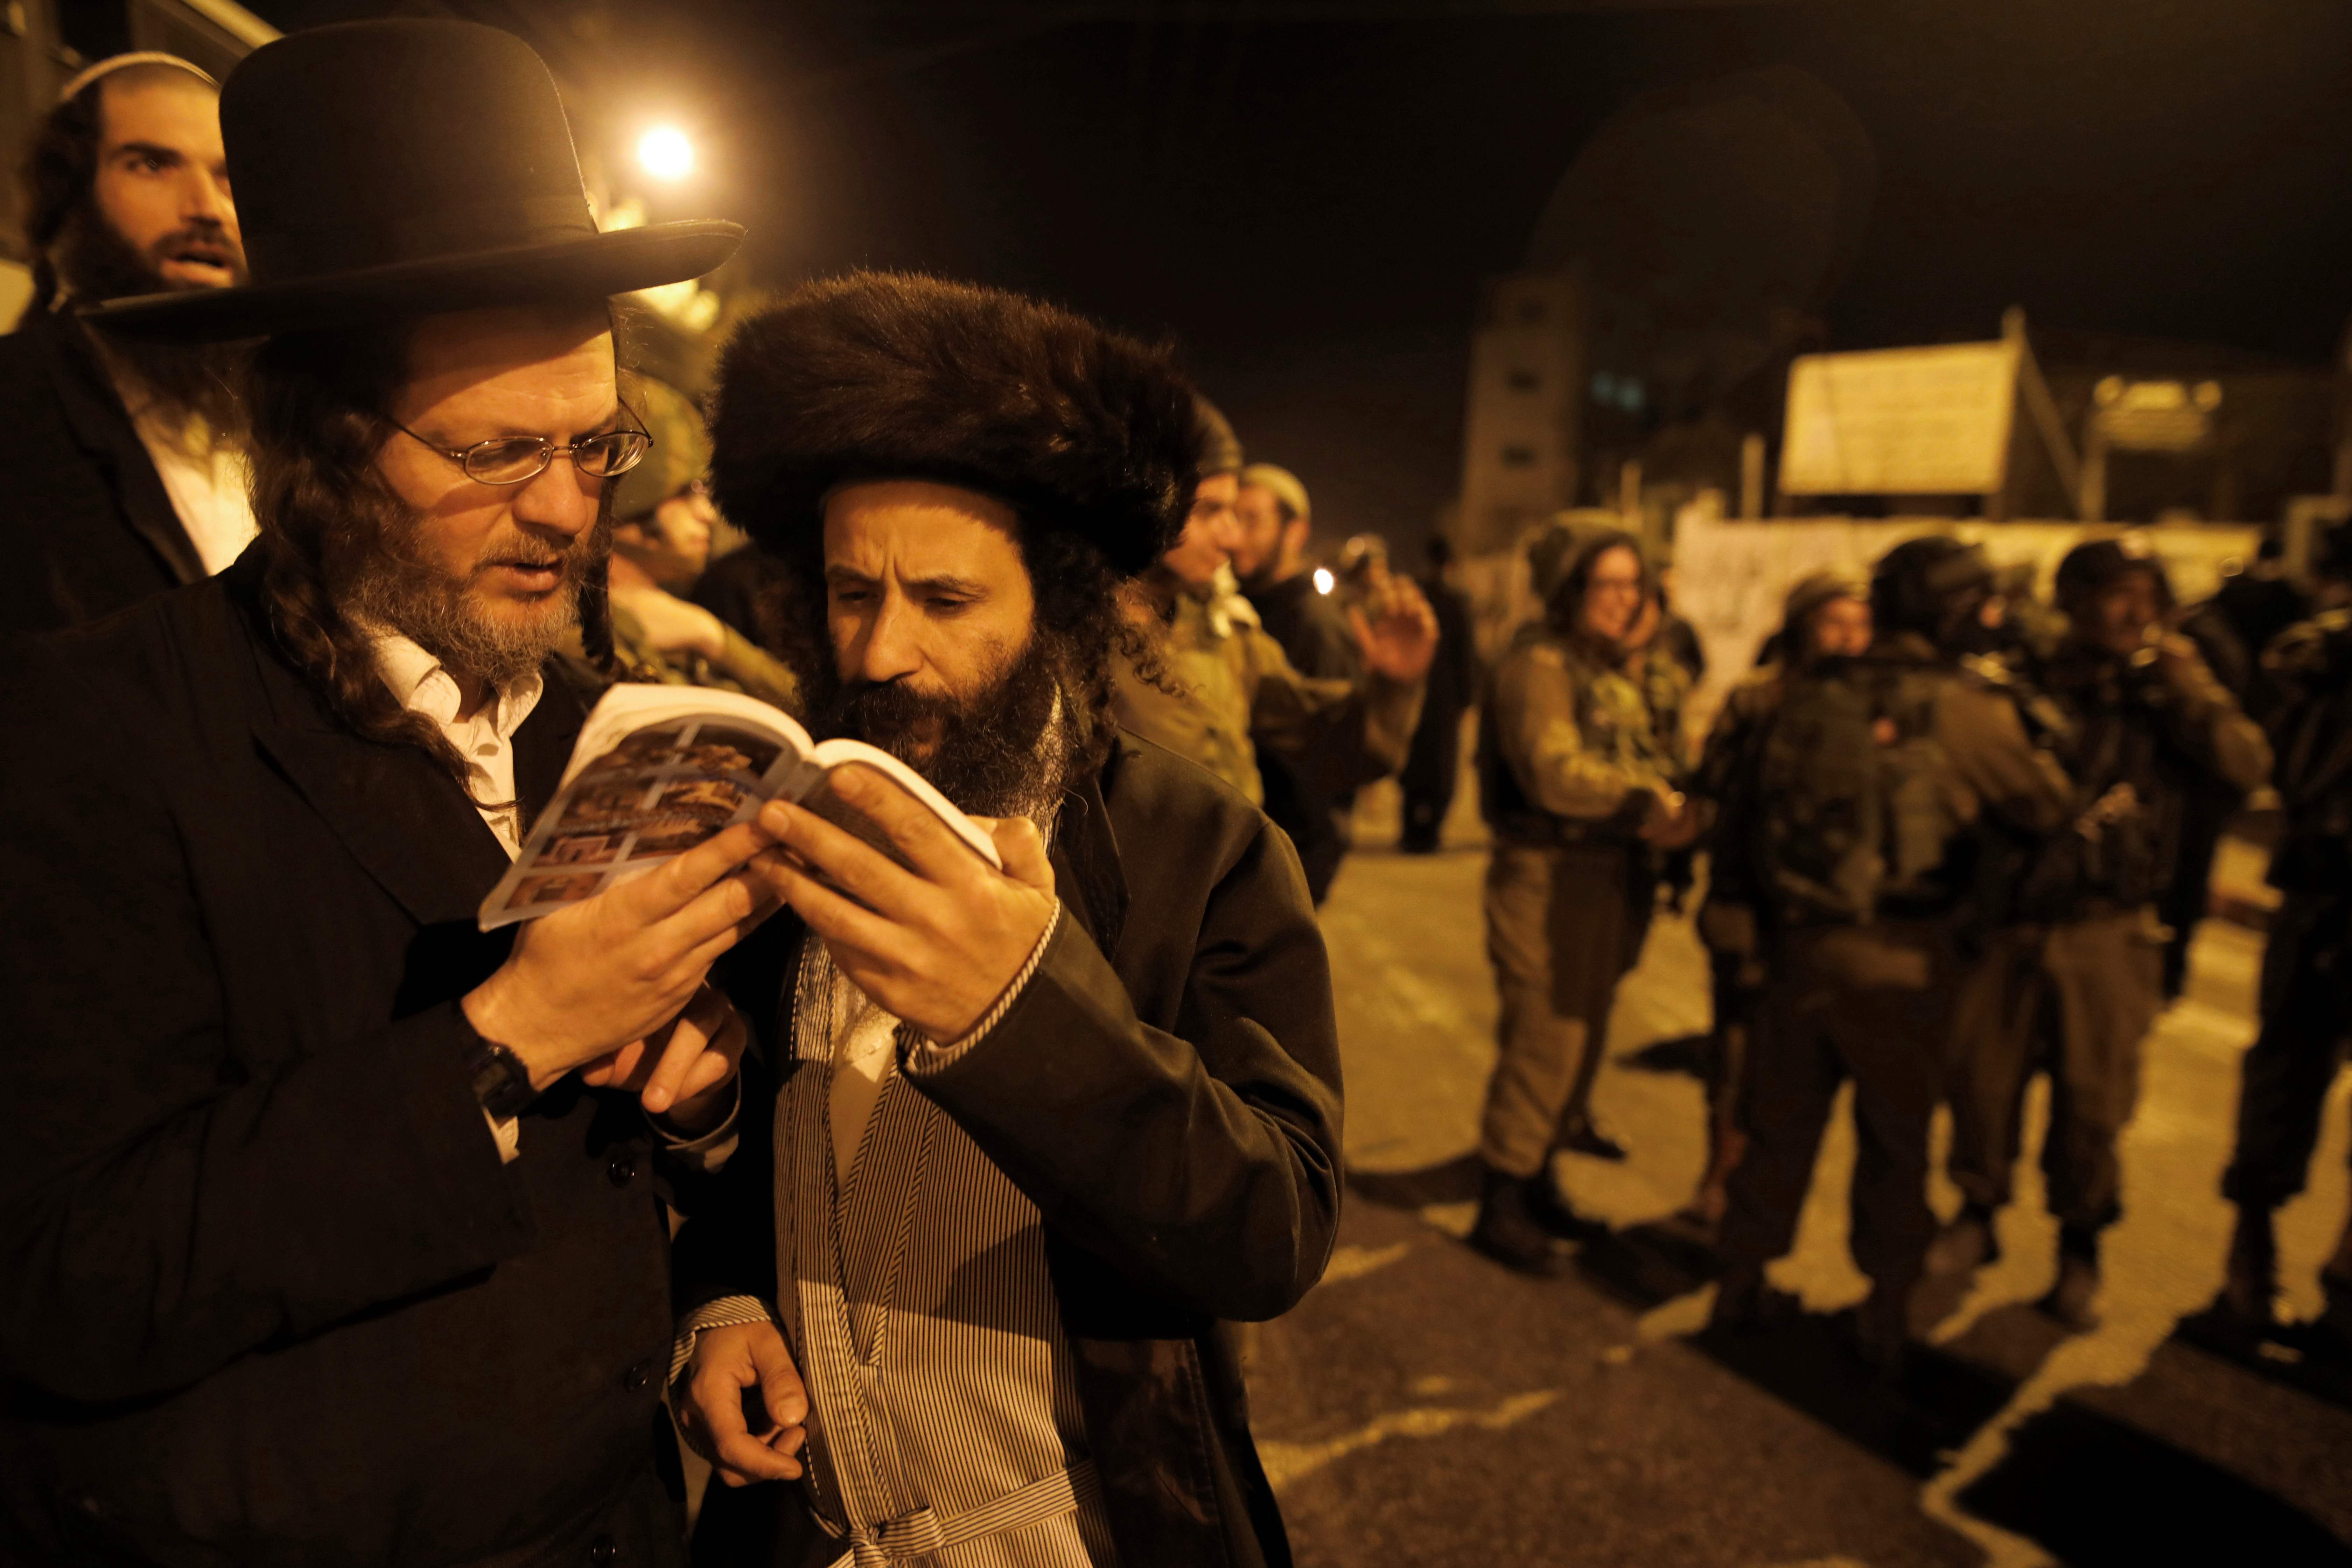 يهود متطرفين يقرءون فى كتب دينية